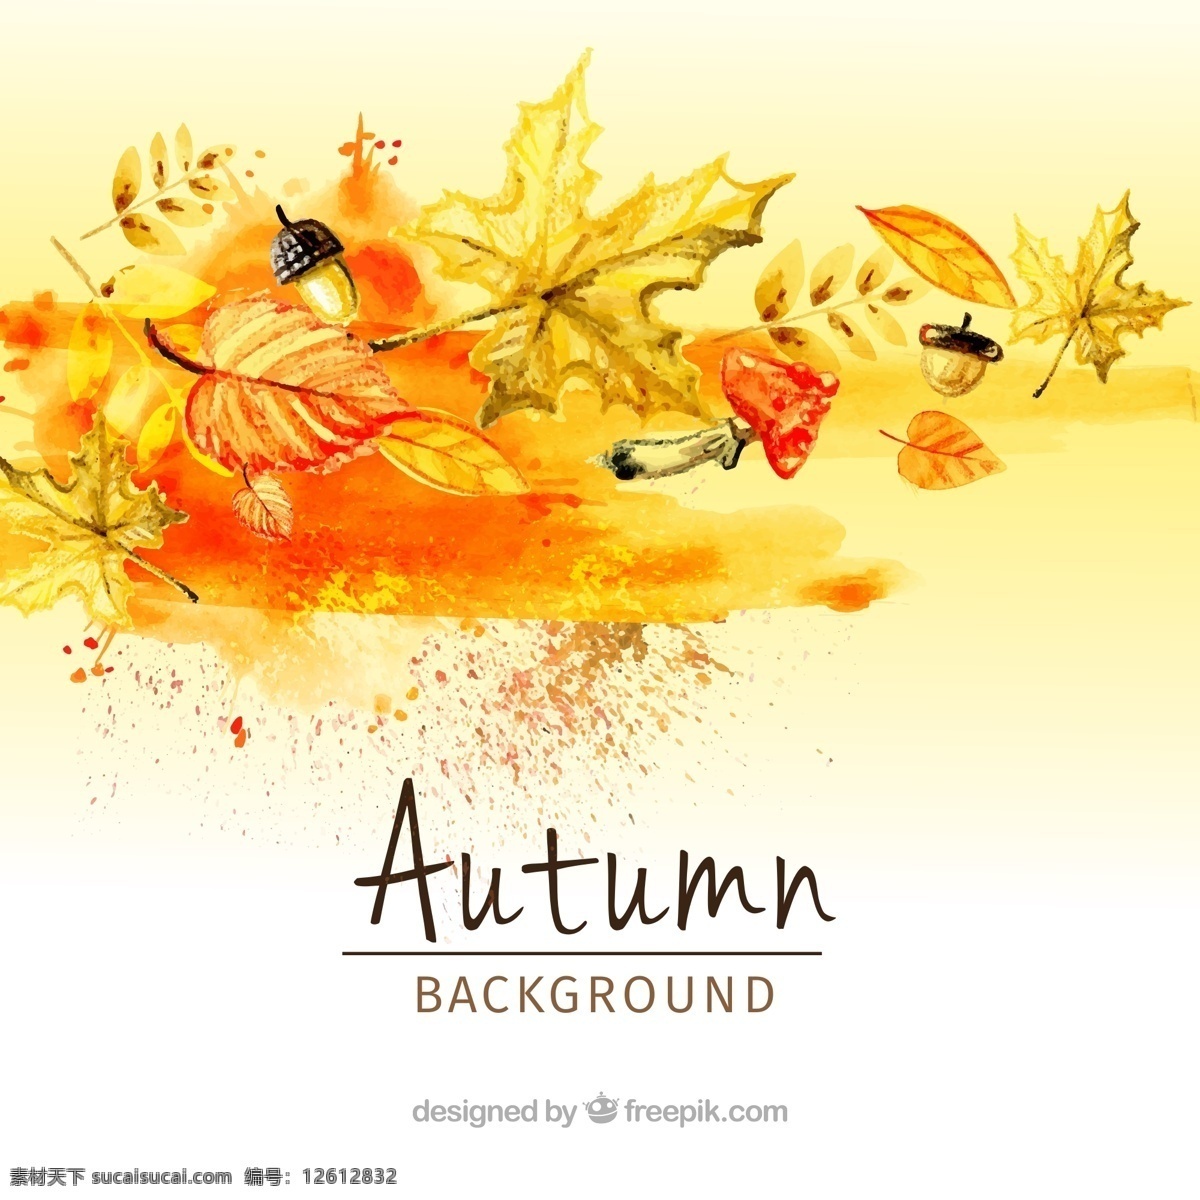 水彩 叶子 蘑菇 现代 背景 树叶 自然 水彩背景 可爱 秋天 五颜六色 优雅 丰富多彩 色彩 自然背景 现代背景 凉爽 温暖